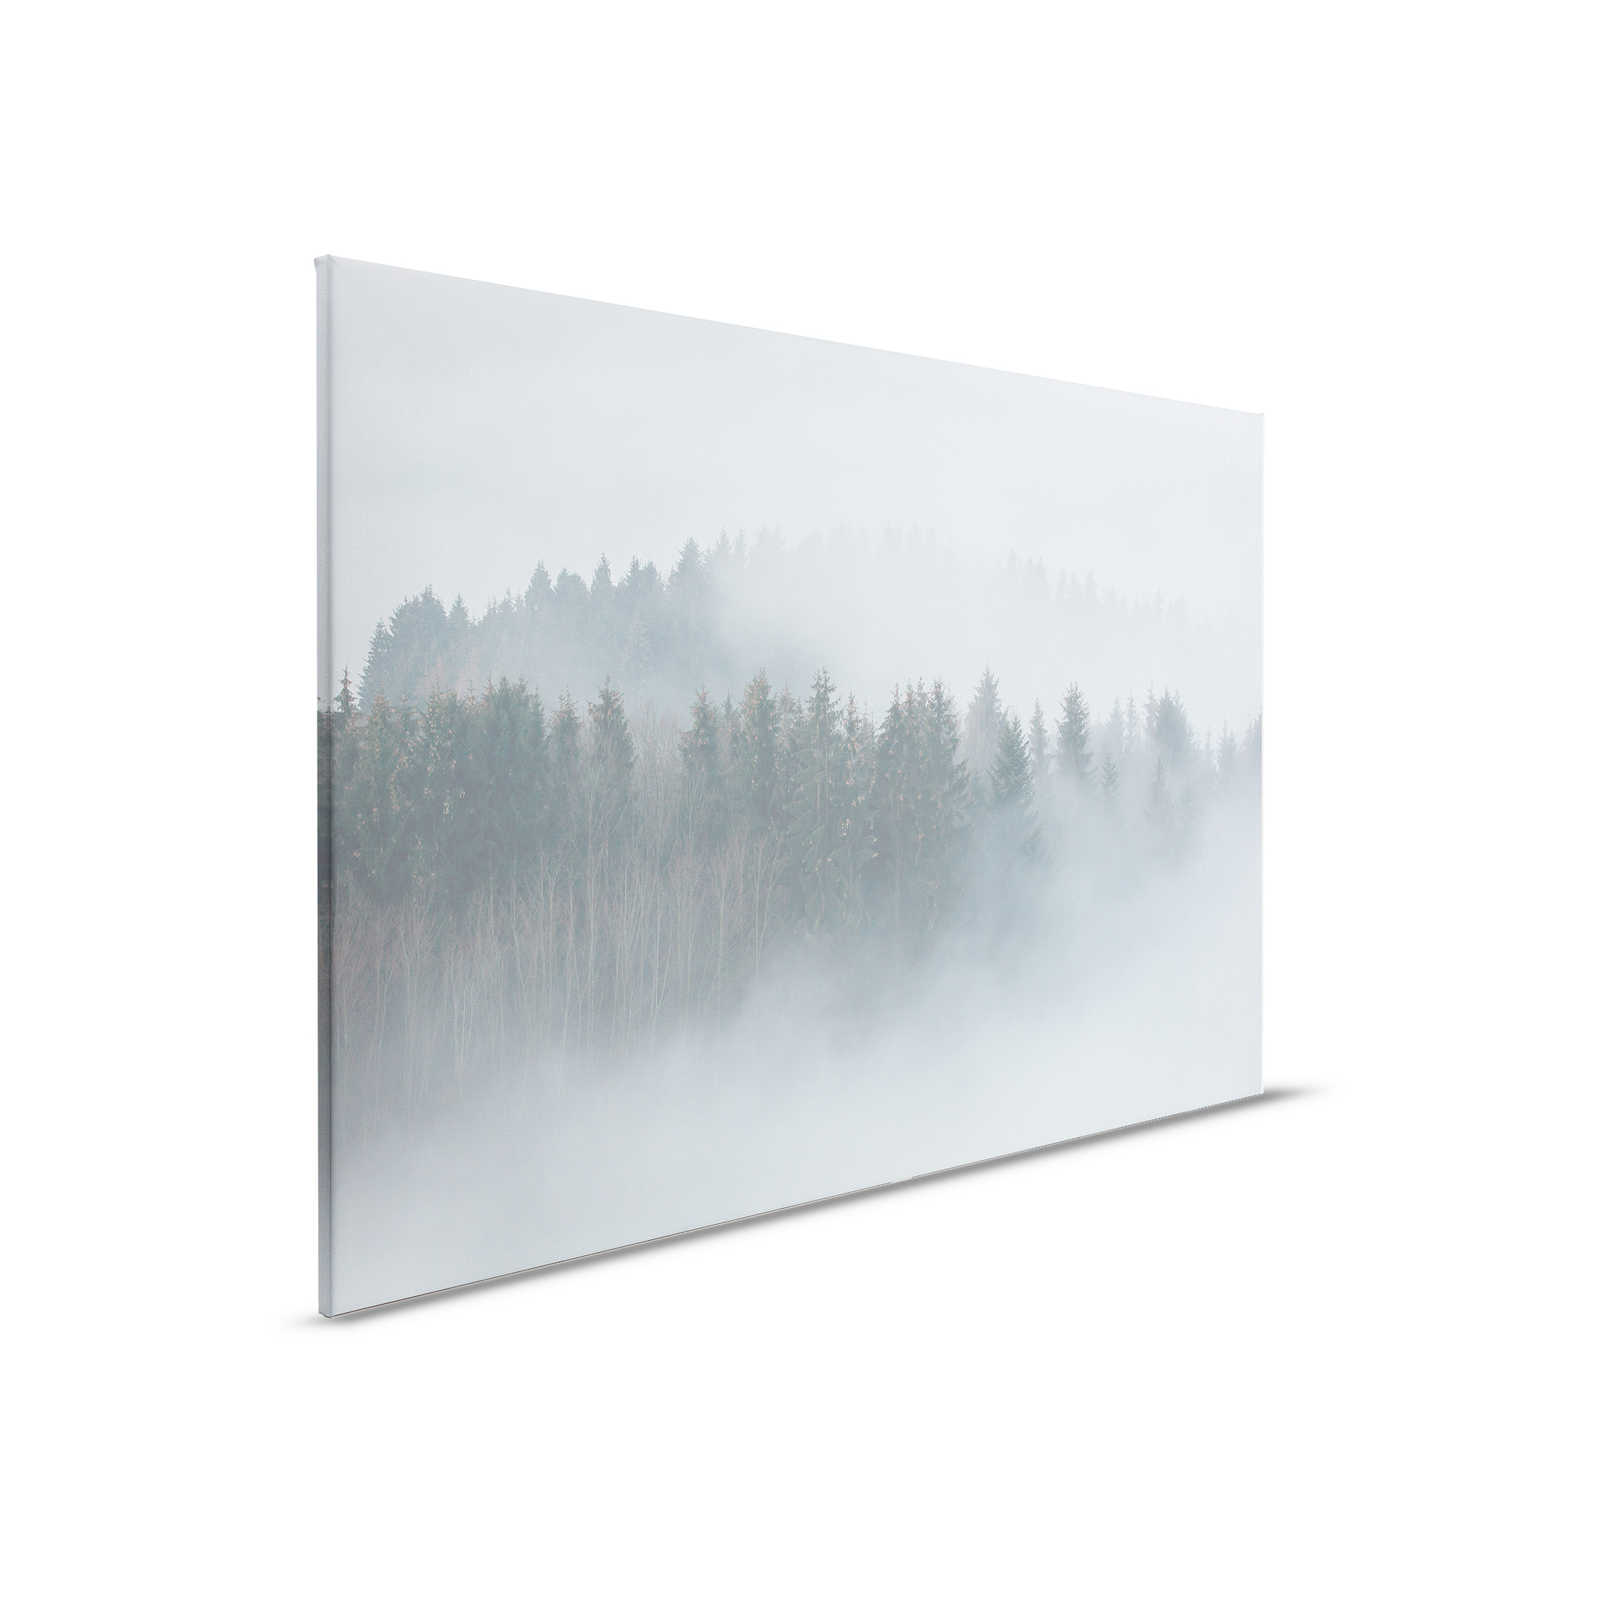         Leinwand mit geheimnisvollem Wald im Nebel – 0,90 m x 0,60 m
    